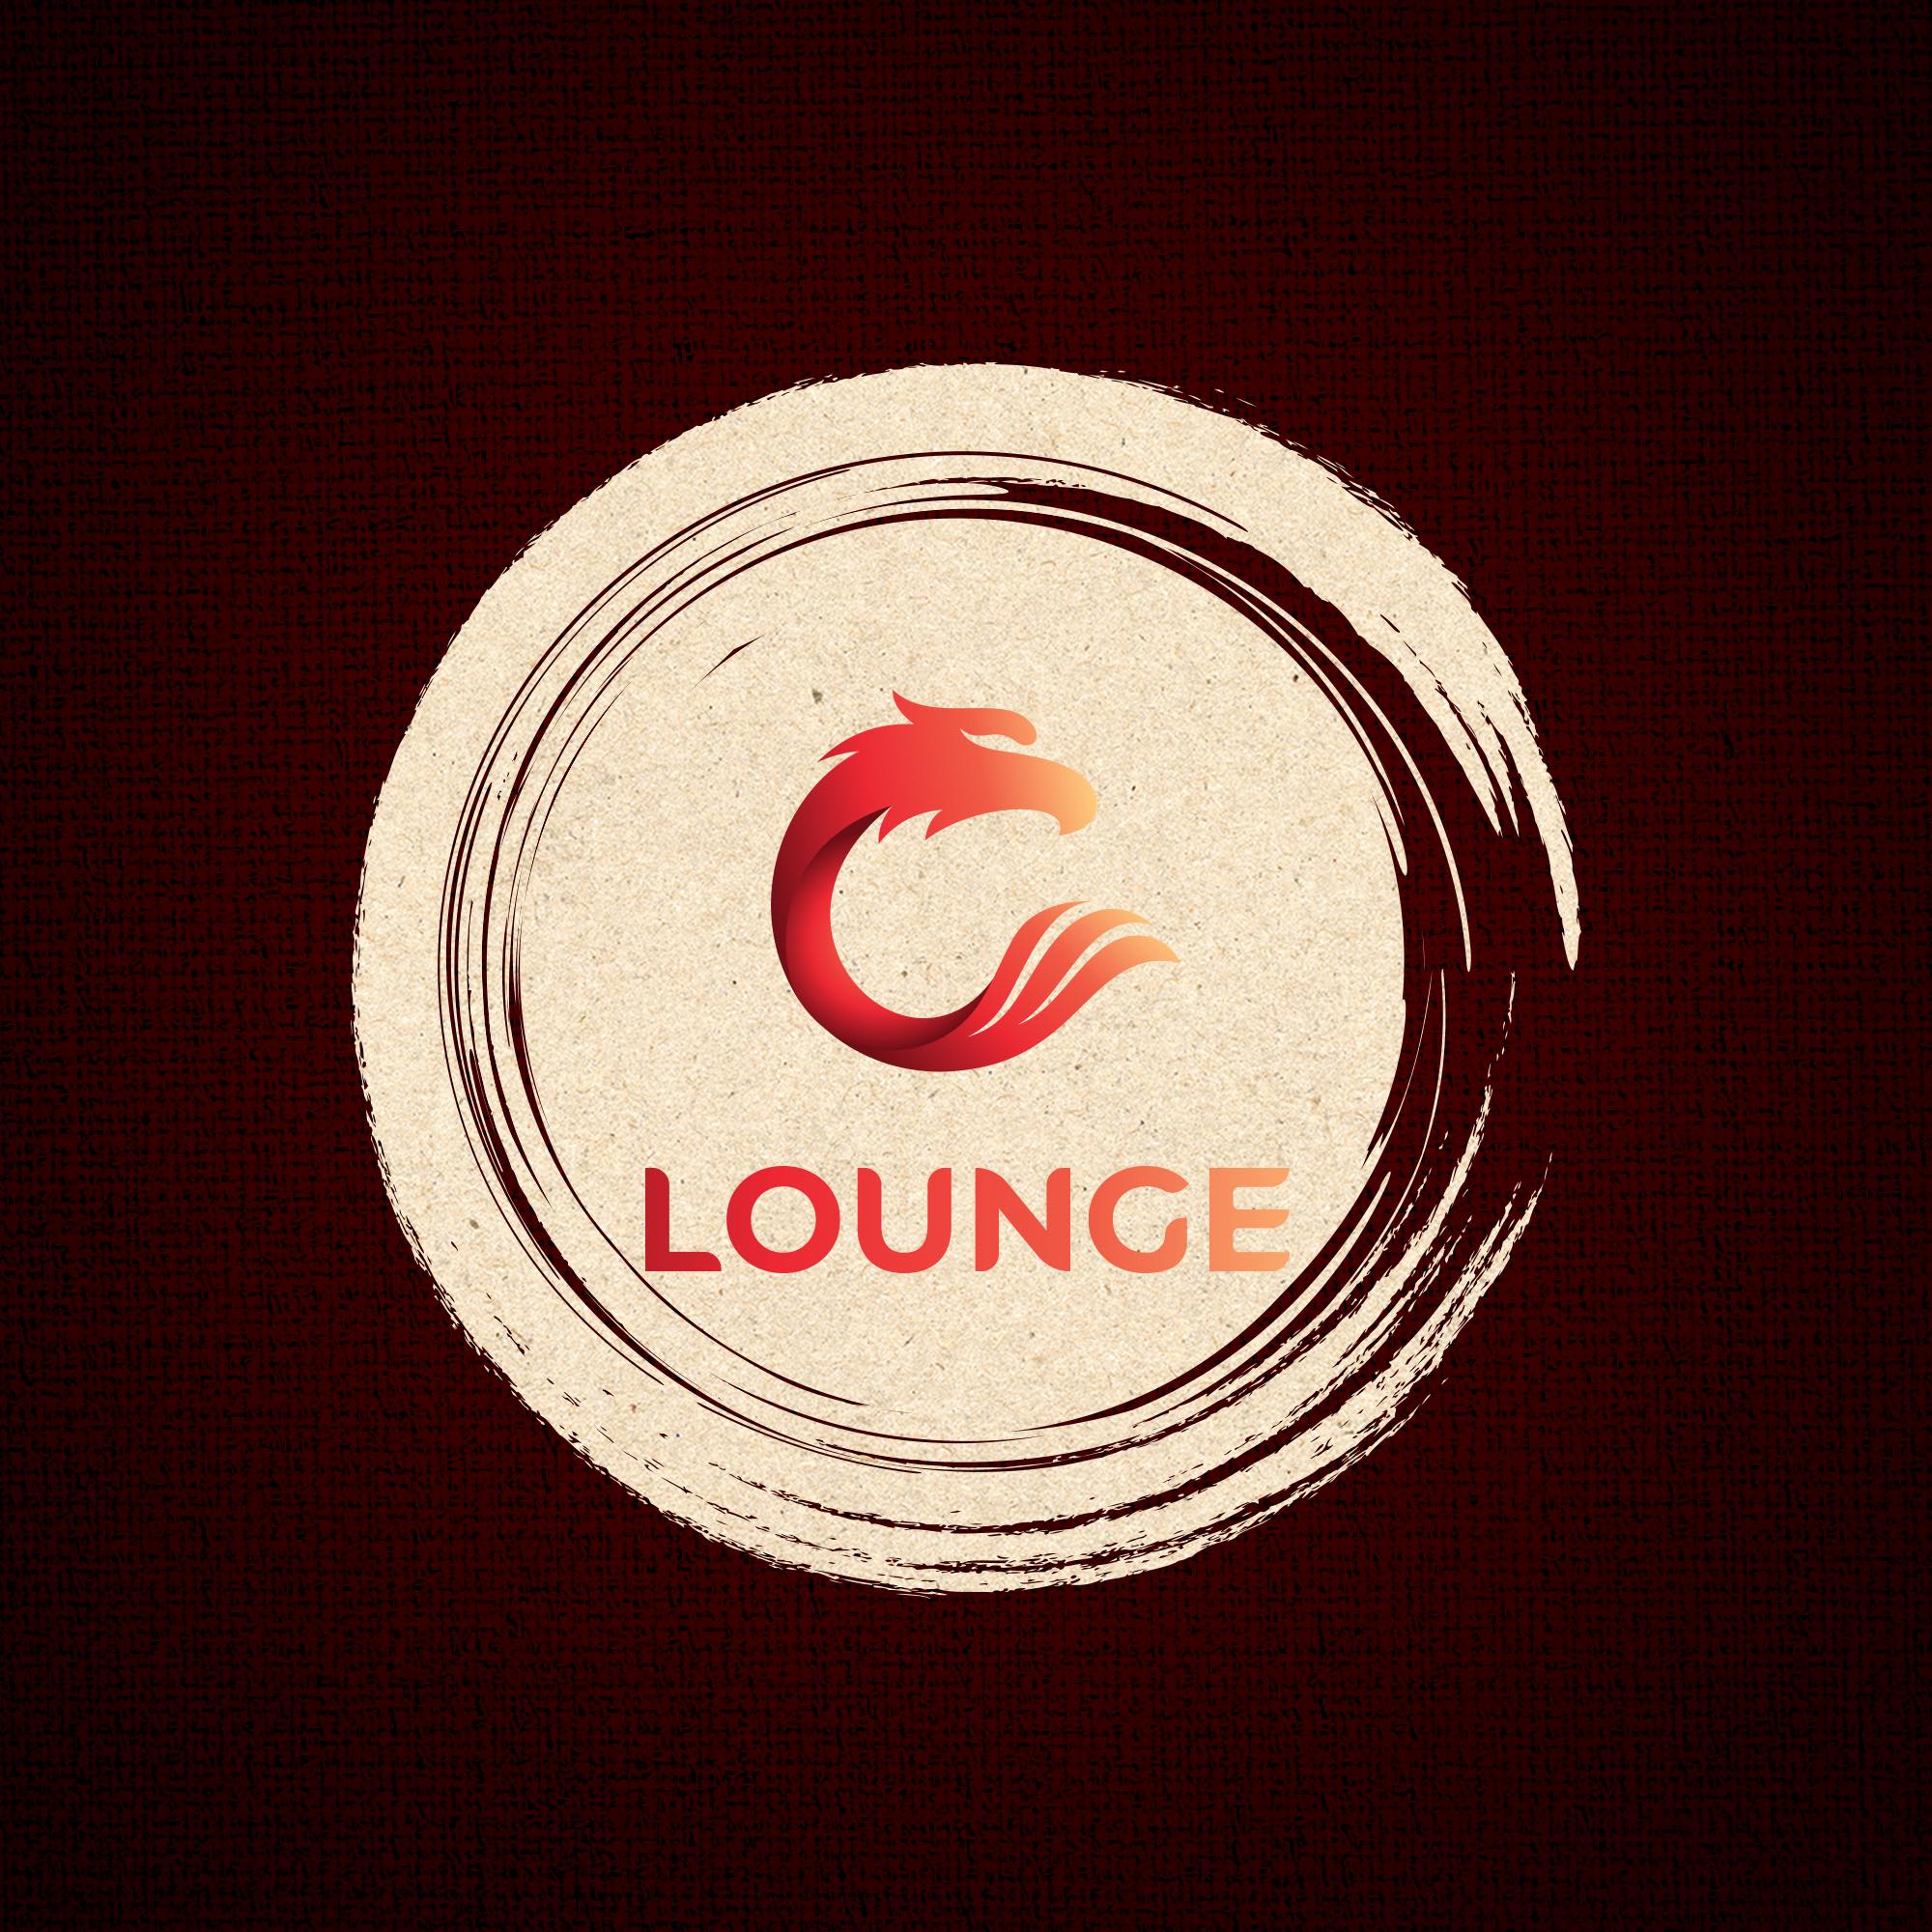 C Lounge Da Nang